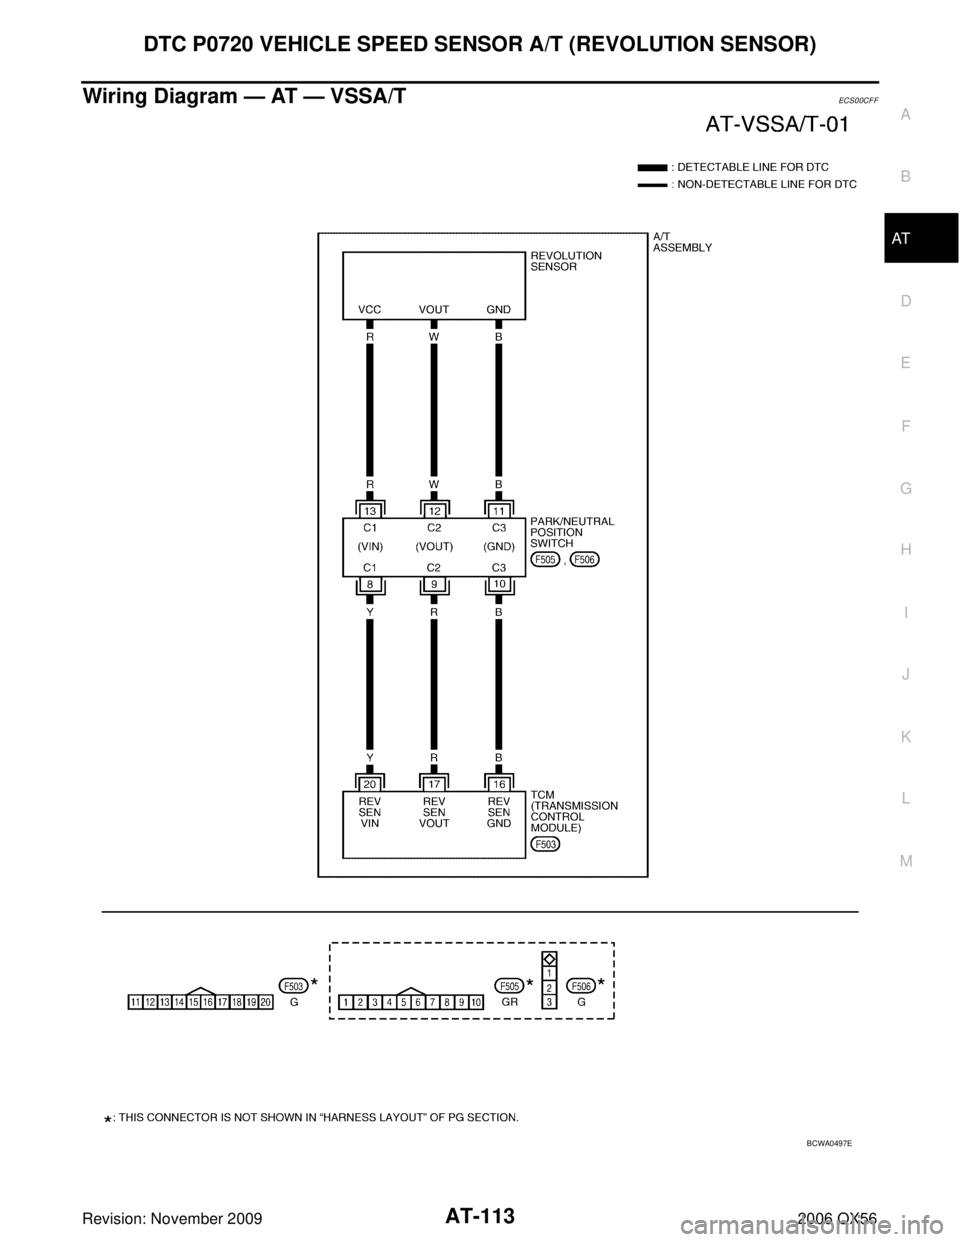 INFINITI QX56 2006  Factory User Guide DTC P0720 VEHICLE SPEED SENSOR A/T (REVOLUTION SENSOR)AT-113
DE
F
G H
I
J
K L
M A
B
AT
Revision: November 2009 2006 QX56
Wiring Diagram — AT — VSSA/TECS00CFF
BCWA0497E 